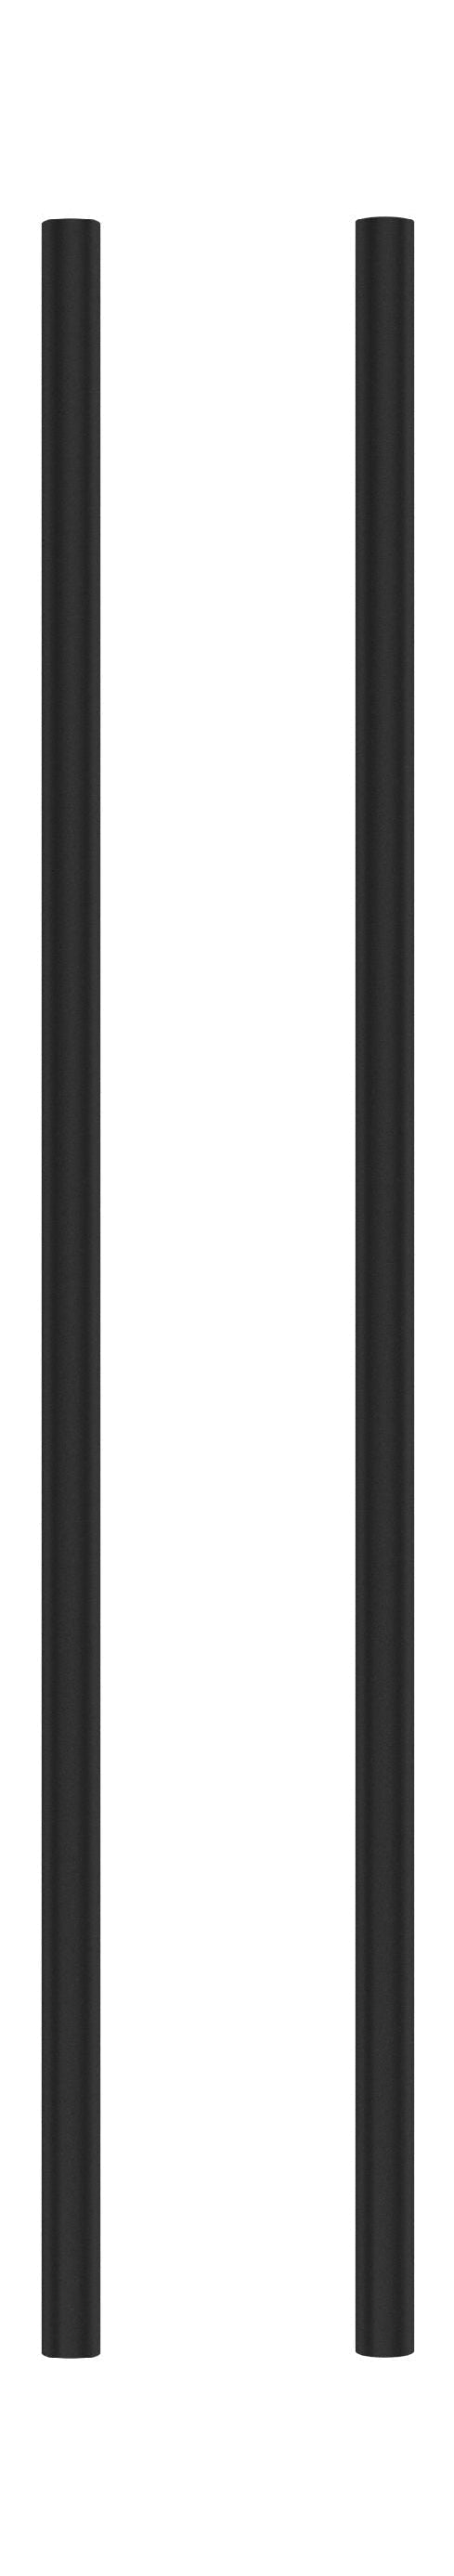 Moebe Regalsystem/Wandregalbein 65 cm, schwarz